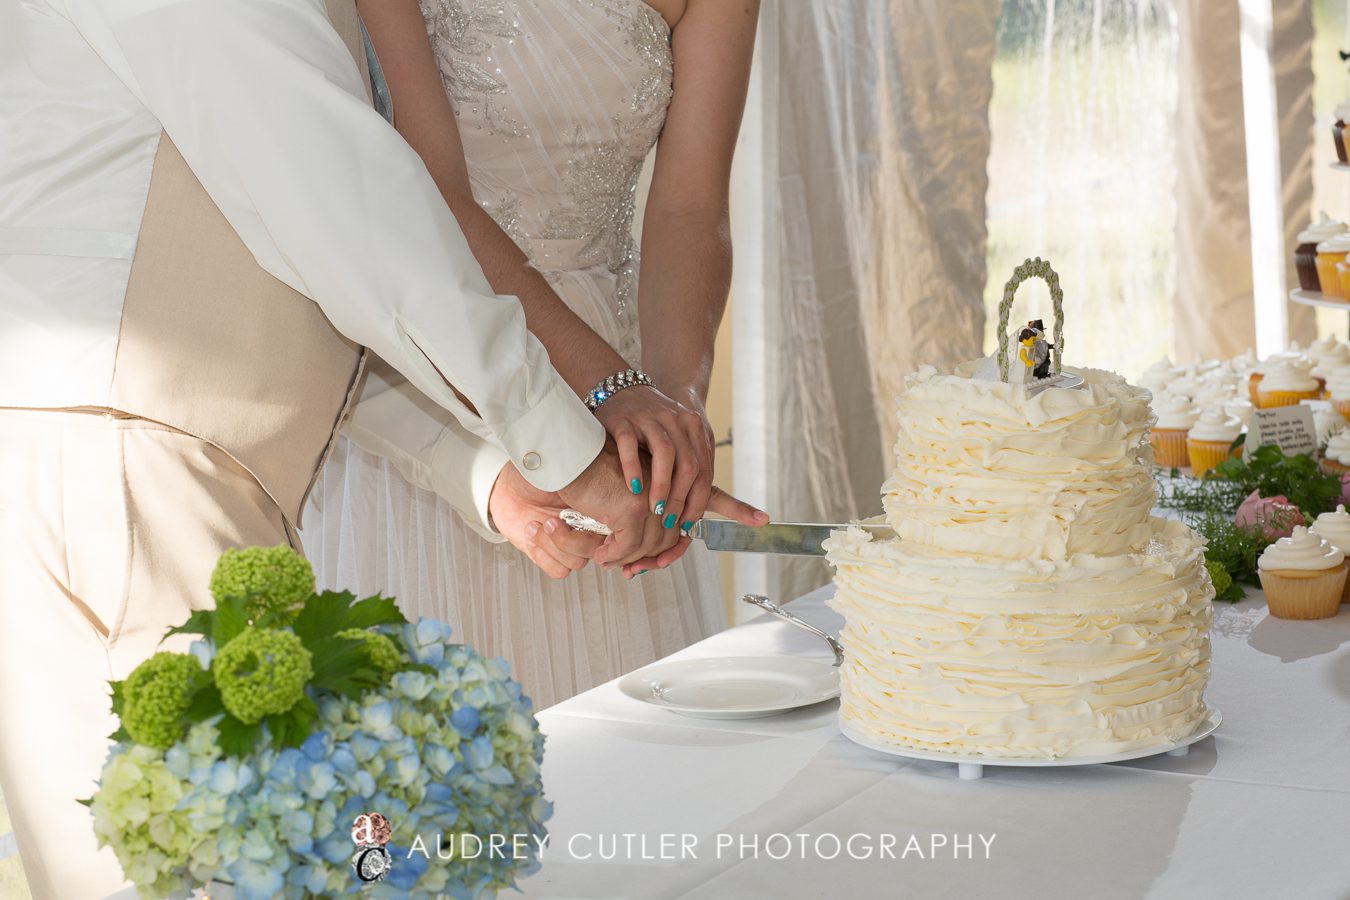 Dennis Port, Massachusetts Wedding Photographers - © Audrey Cutler Photography 2014